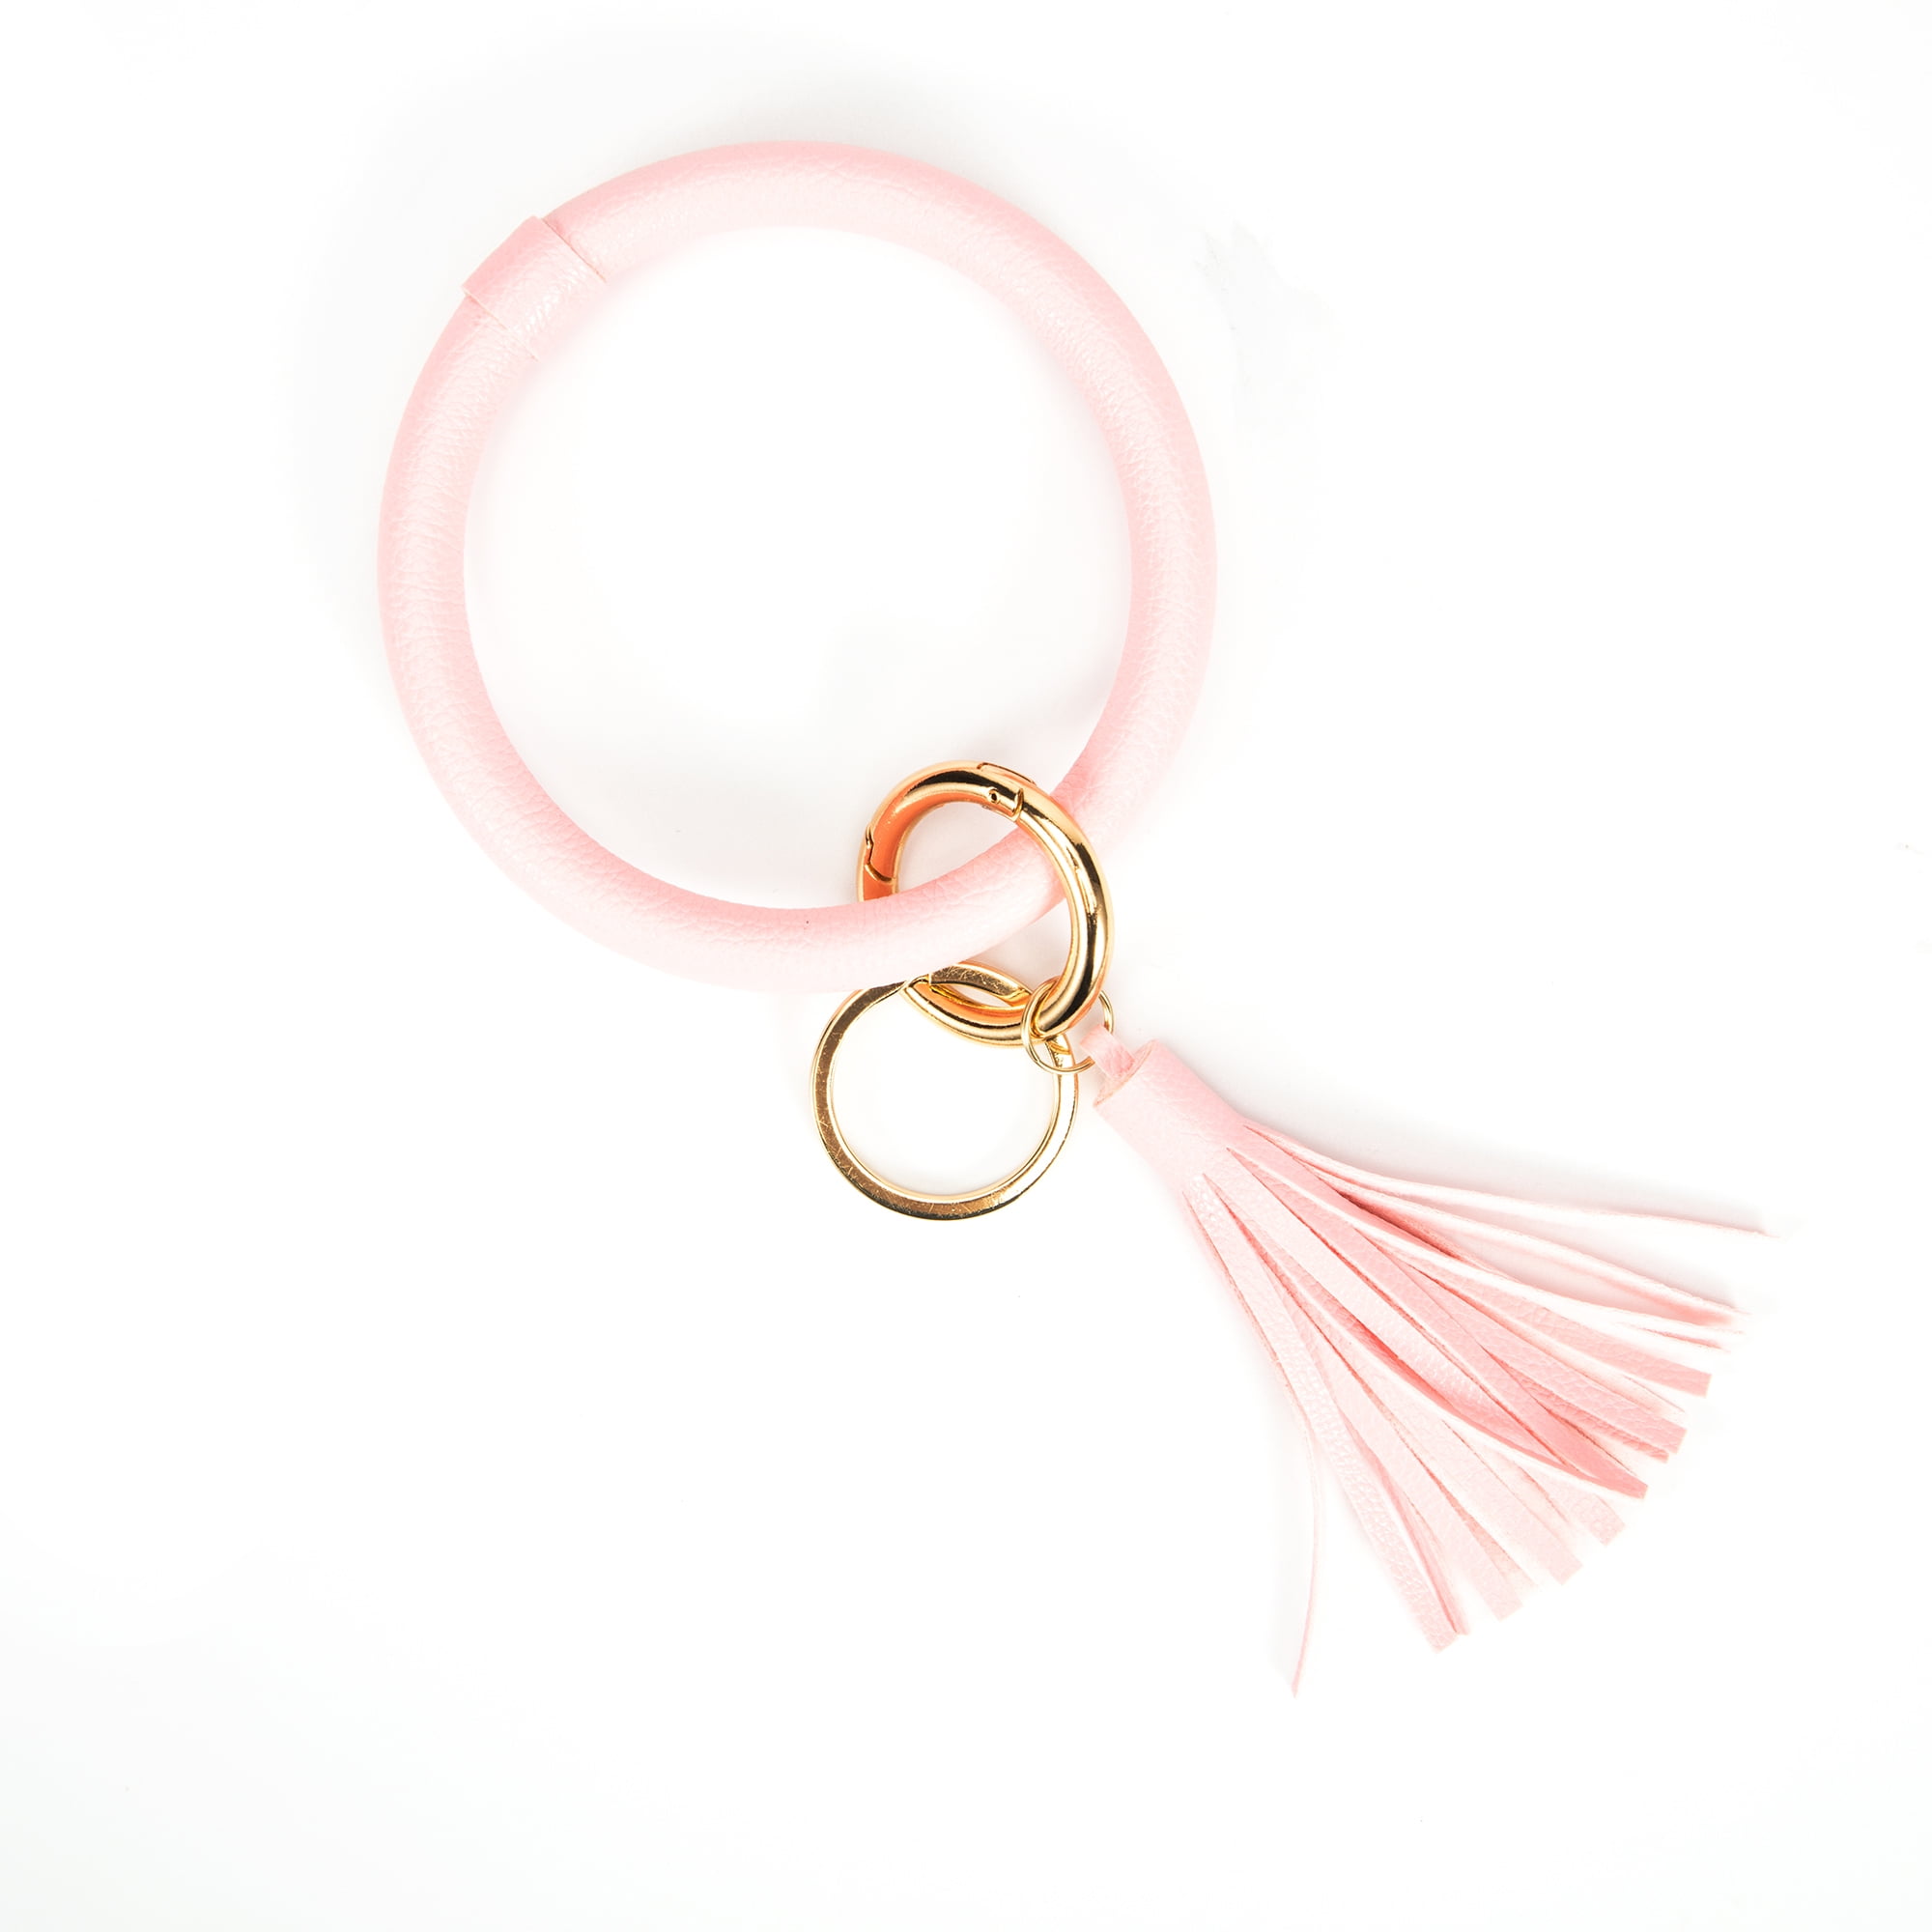 Dodoing Wristlet Round Key Ring Chain Leather Oversized Bracelet Bangle Keychain Holder Tassel for Women Girl, Women's, Size: Large